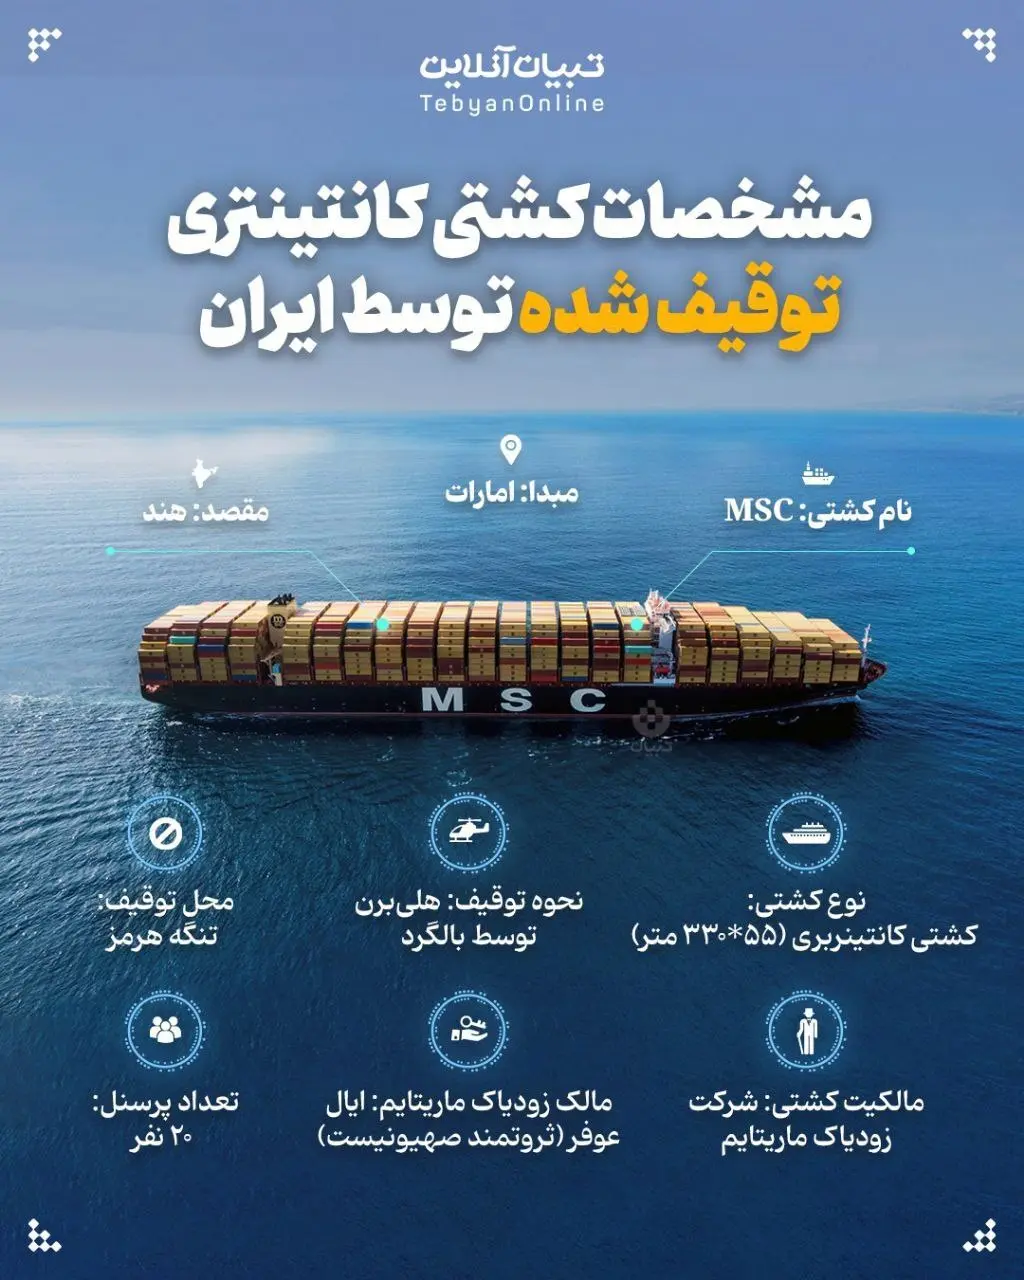 مشخصات کشتی کانتینری توقیف شده توسط سپاه+ اینفوگرافیک